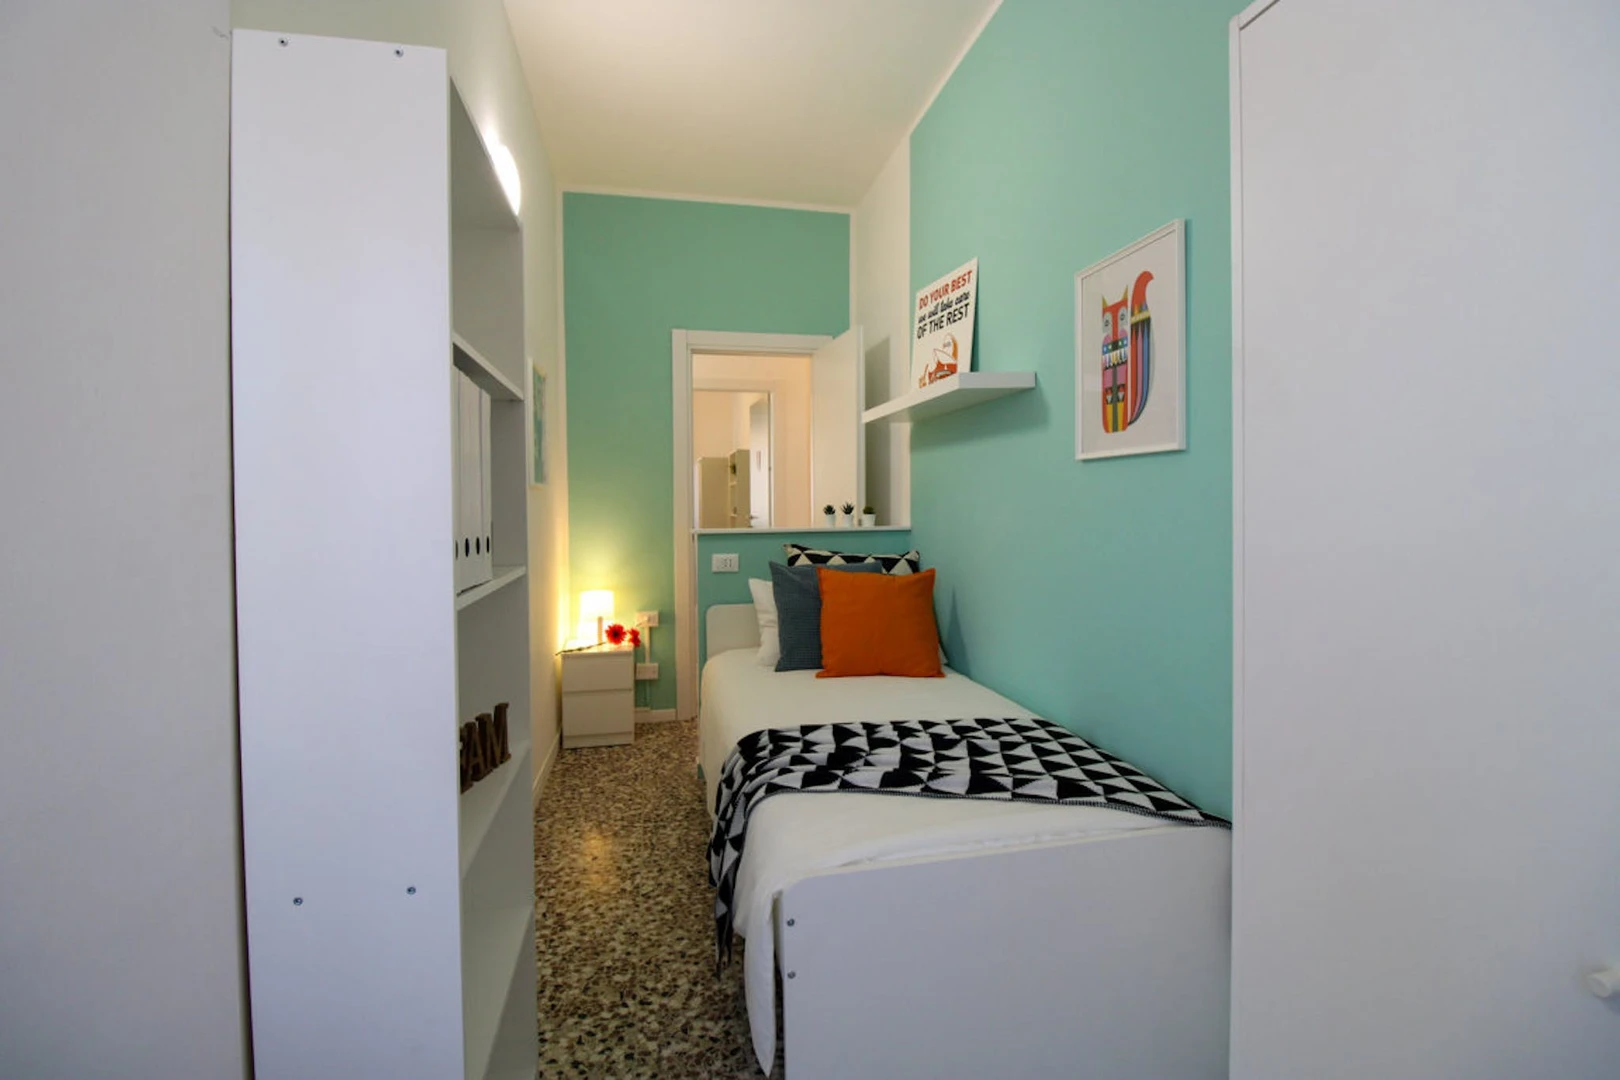 Pavia de çift kişilik yataklı kiralık oda